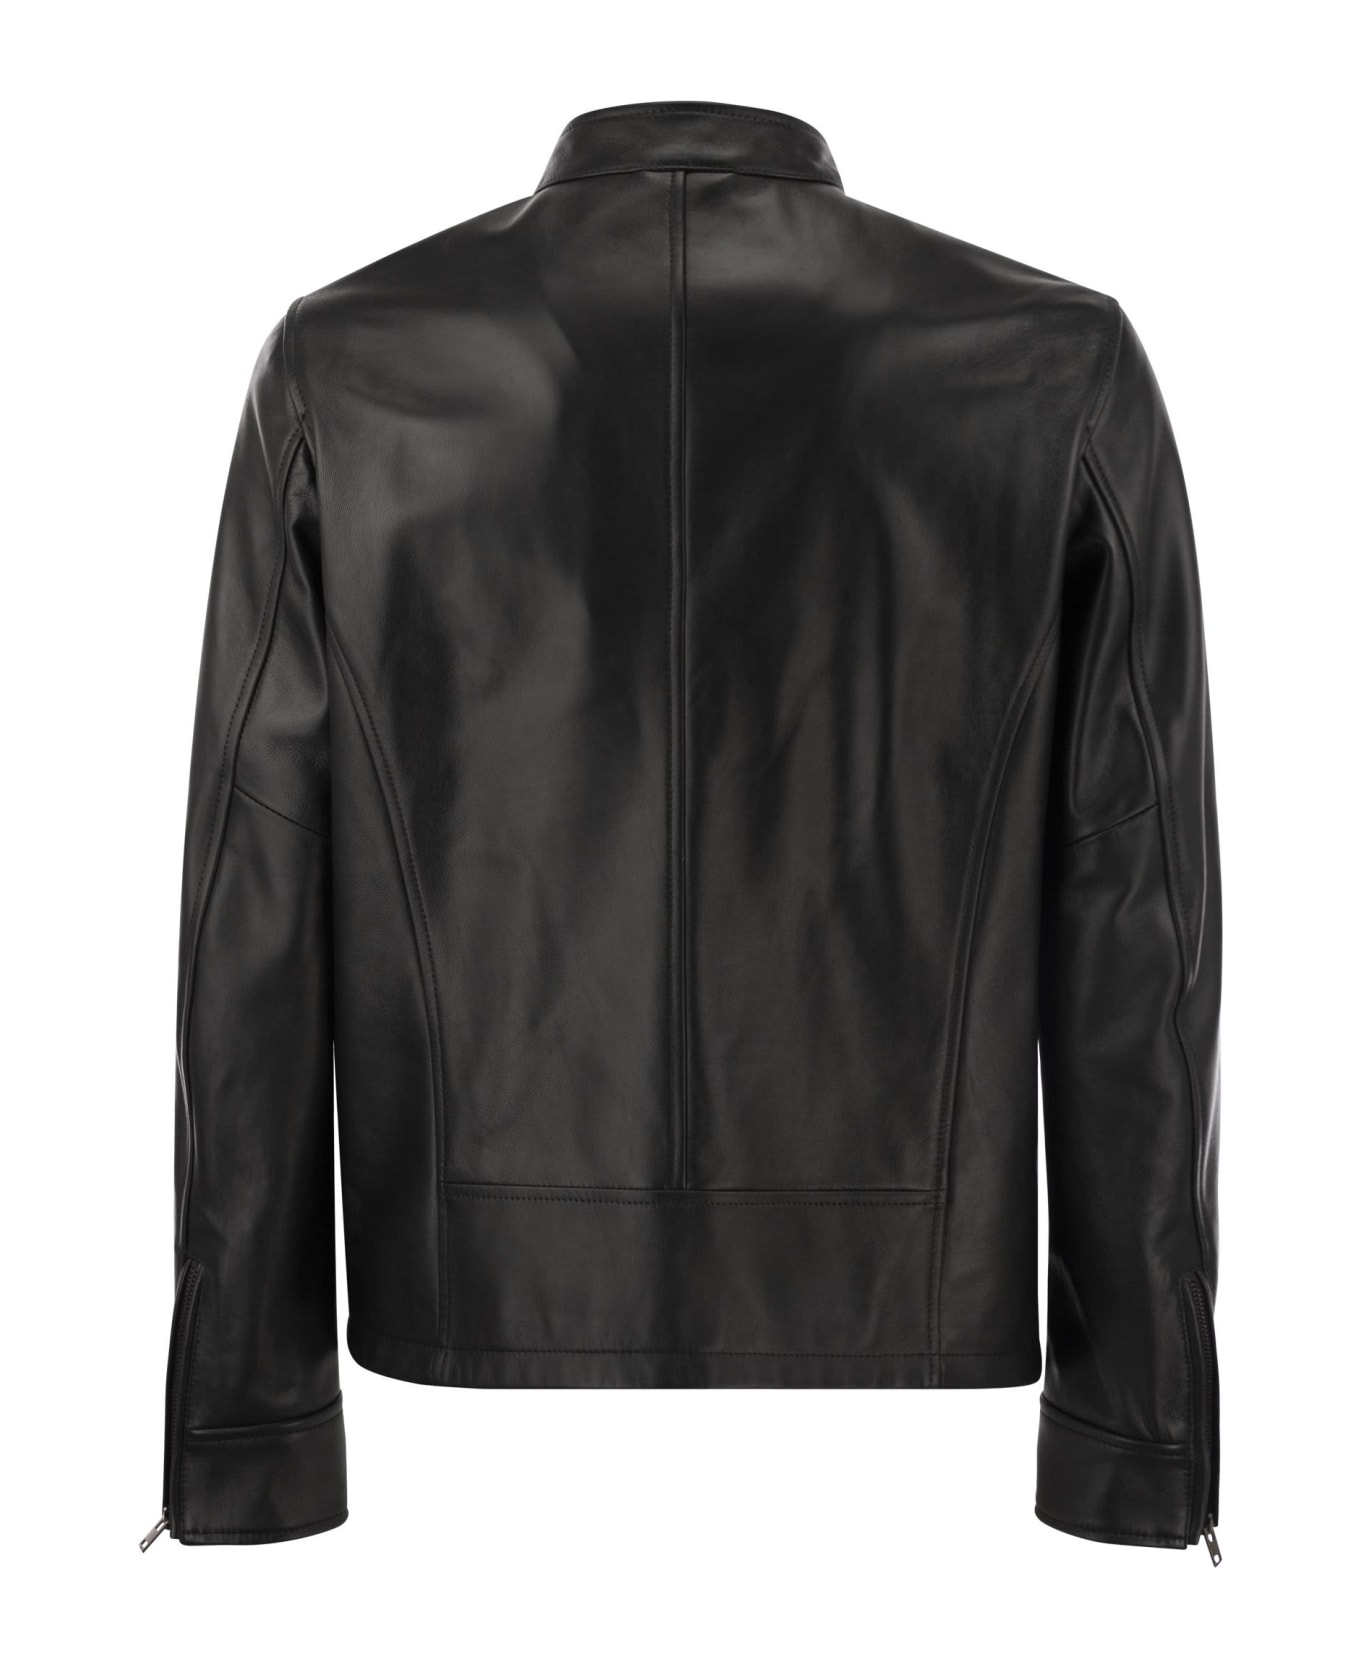 Hogan Leather Biker Jacket - Black